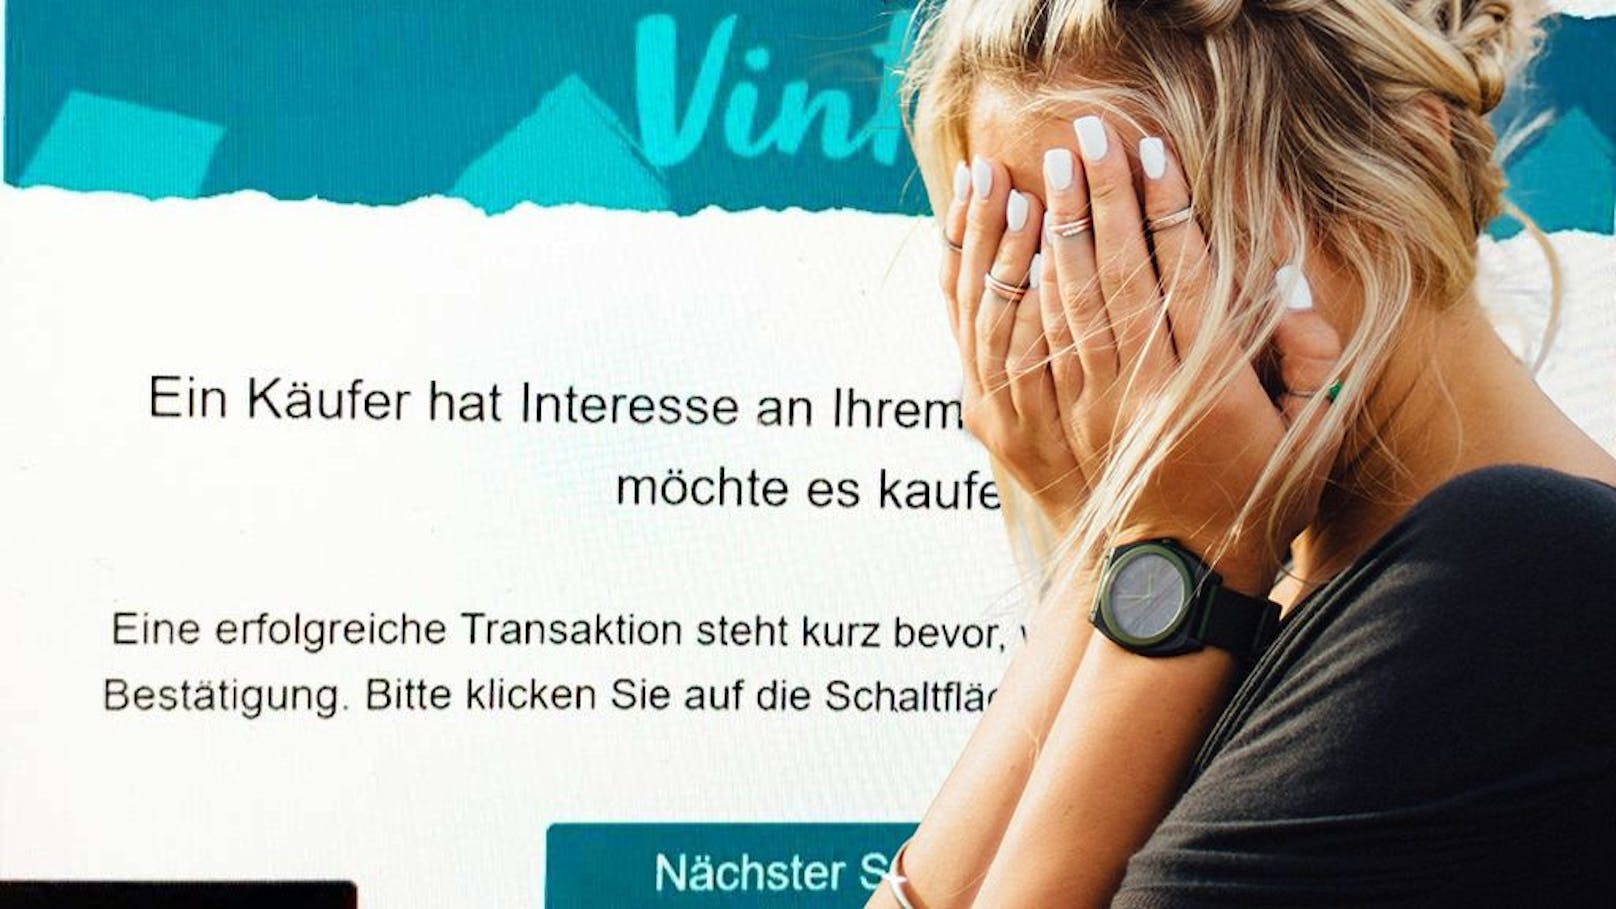 Wienerin will Kleider verkaufen, das kostet sie 500 €